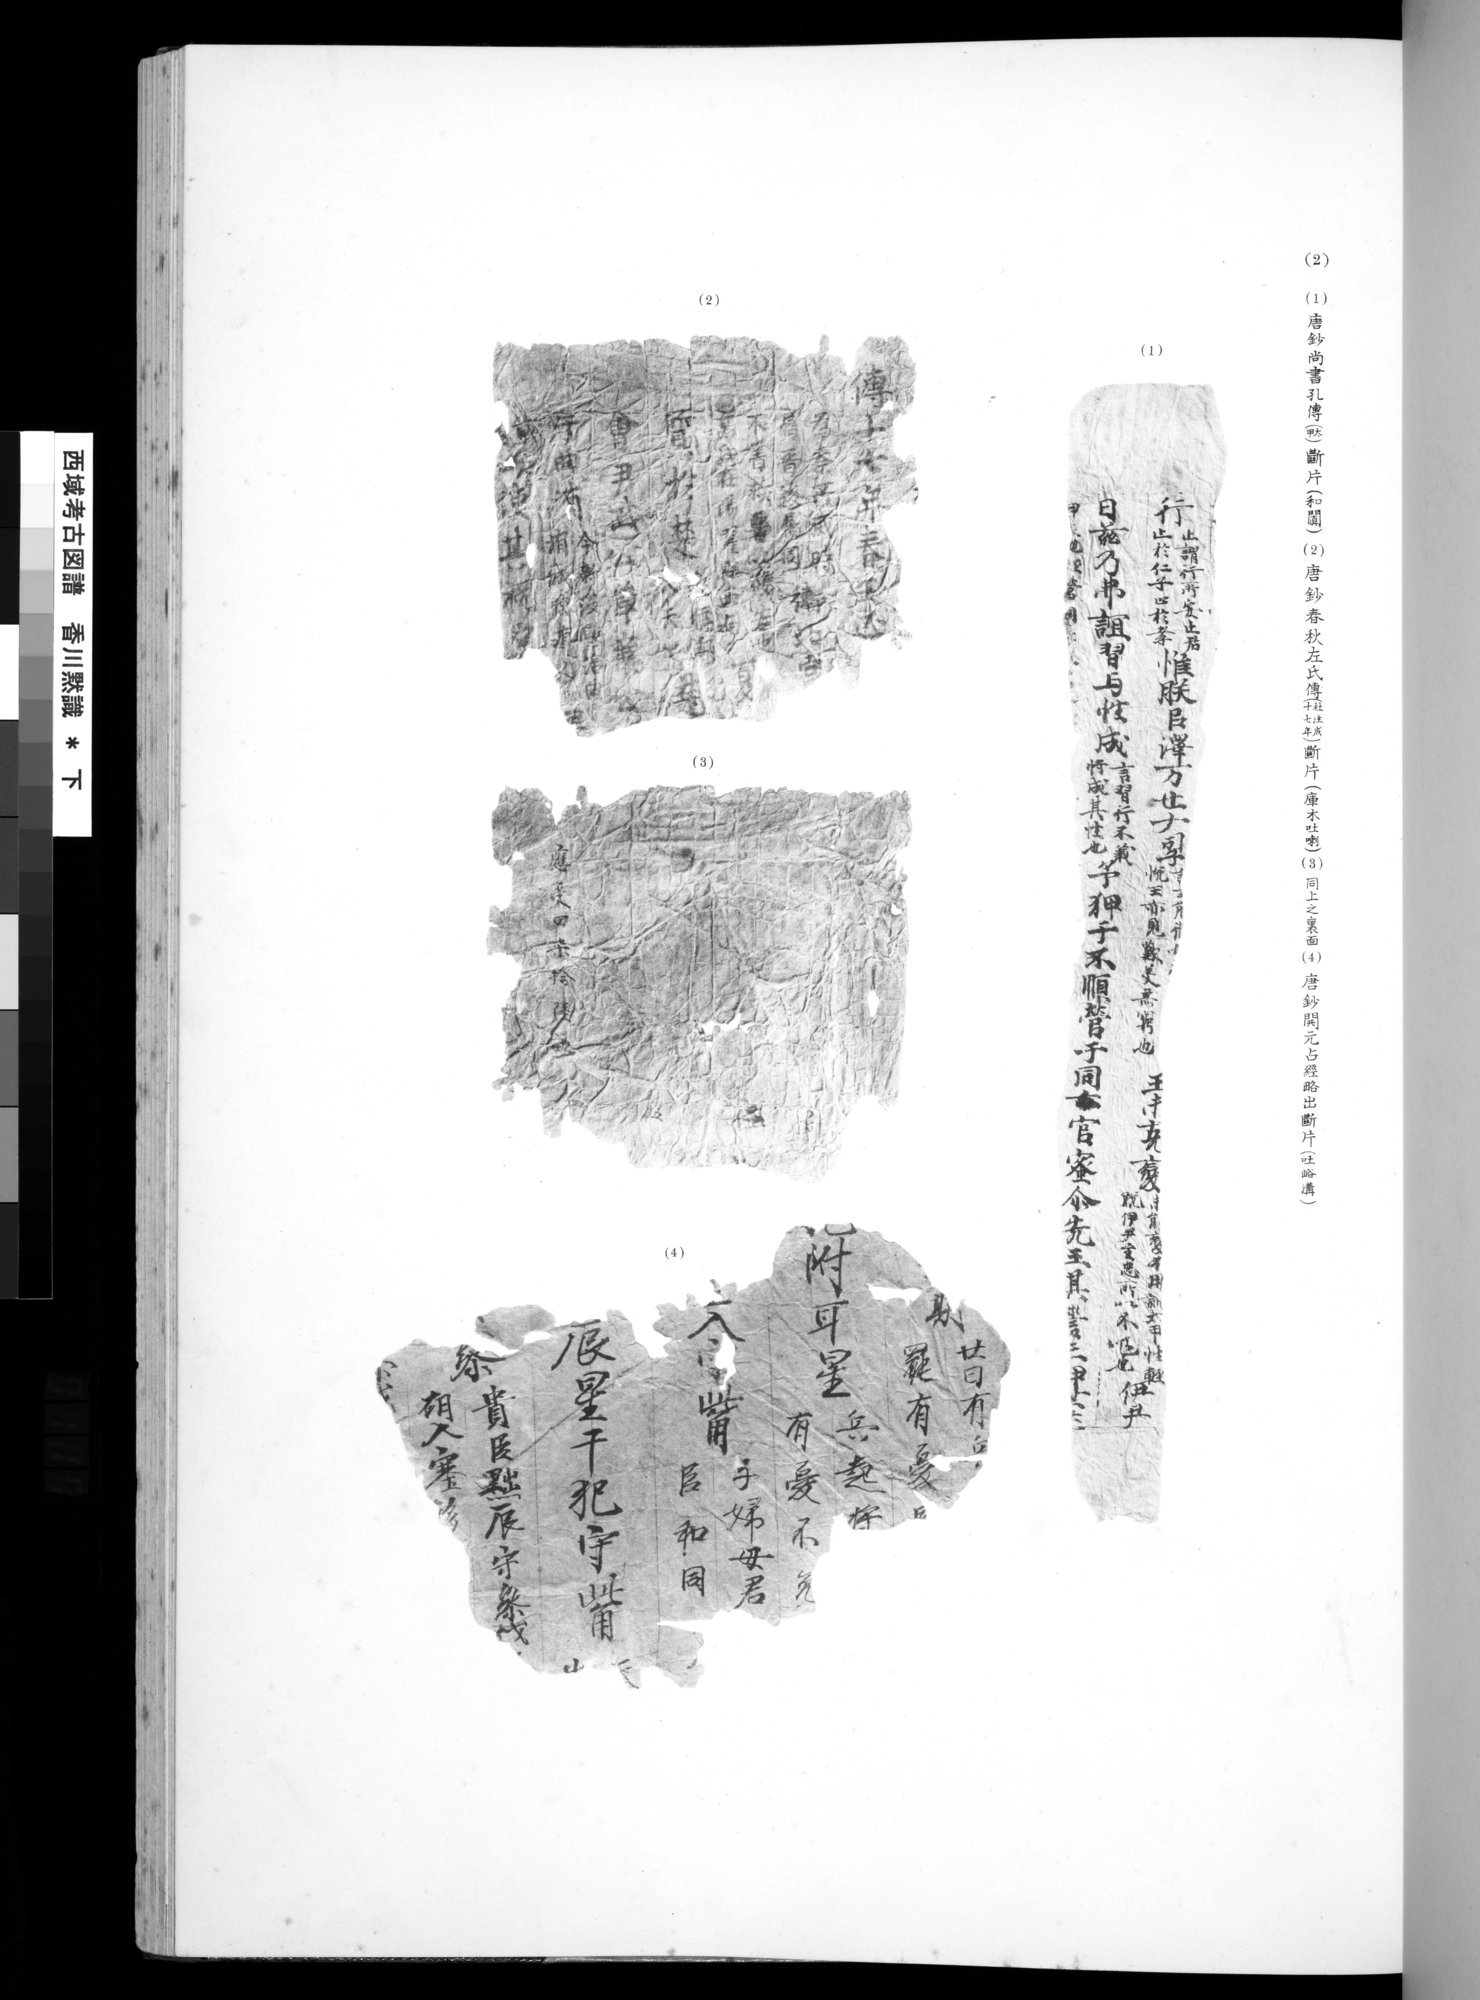 西域考古図譜 : vol.2 / 233 ページ（白黒高解像度画像）